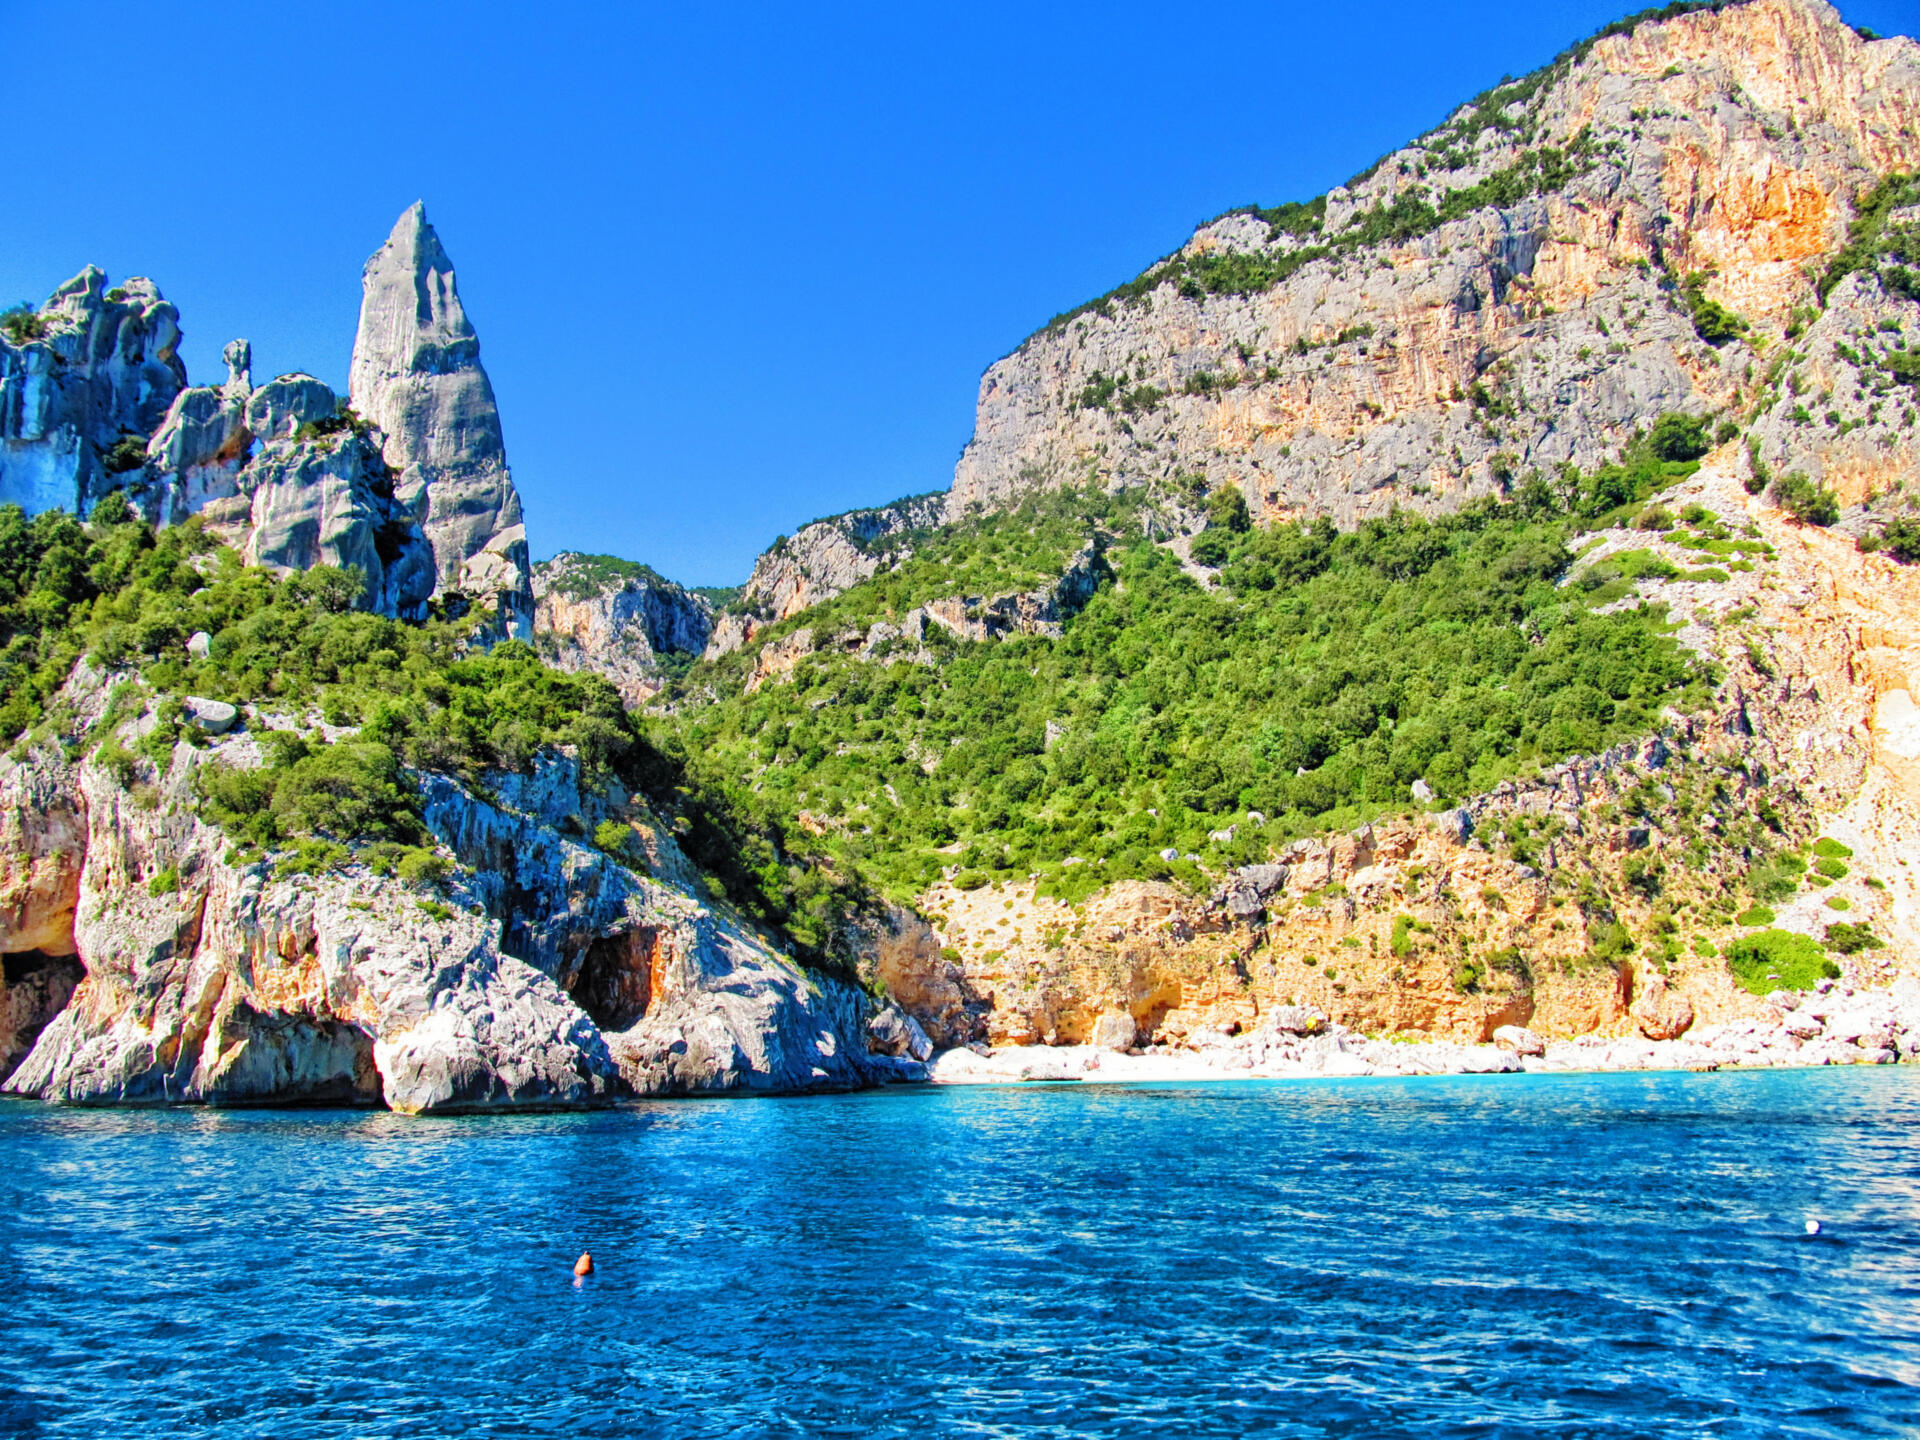 Sardinien ist ein wahres Paradies für Wanderer – türkisblaue Buchten, feinsandige Strände und atemberaubende Panoramawege. Daneben bietet es kulturelle Schätze aus den verschiedensten historischen Epochen.